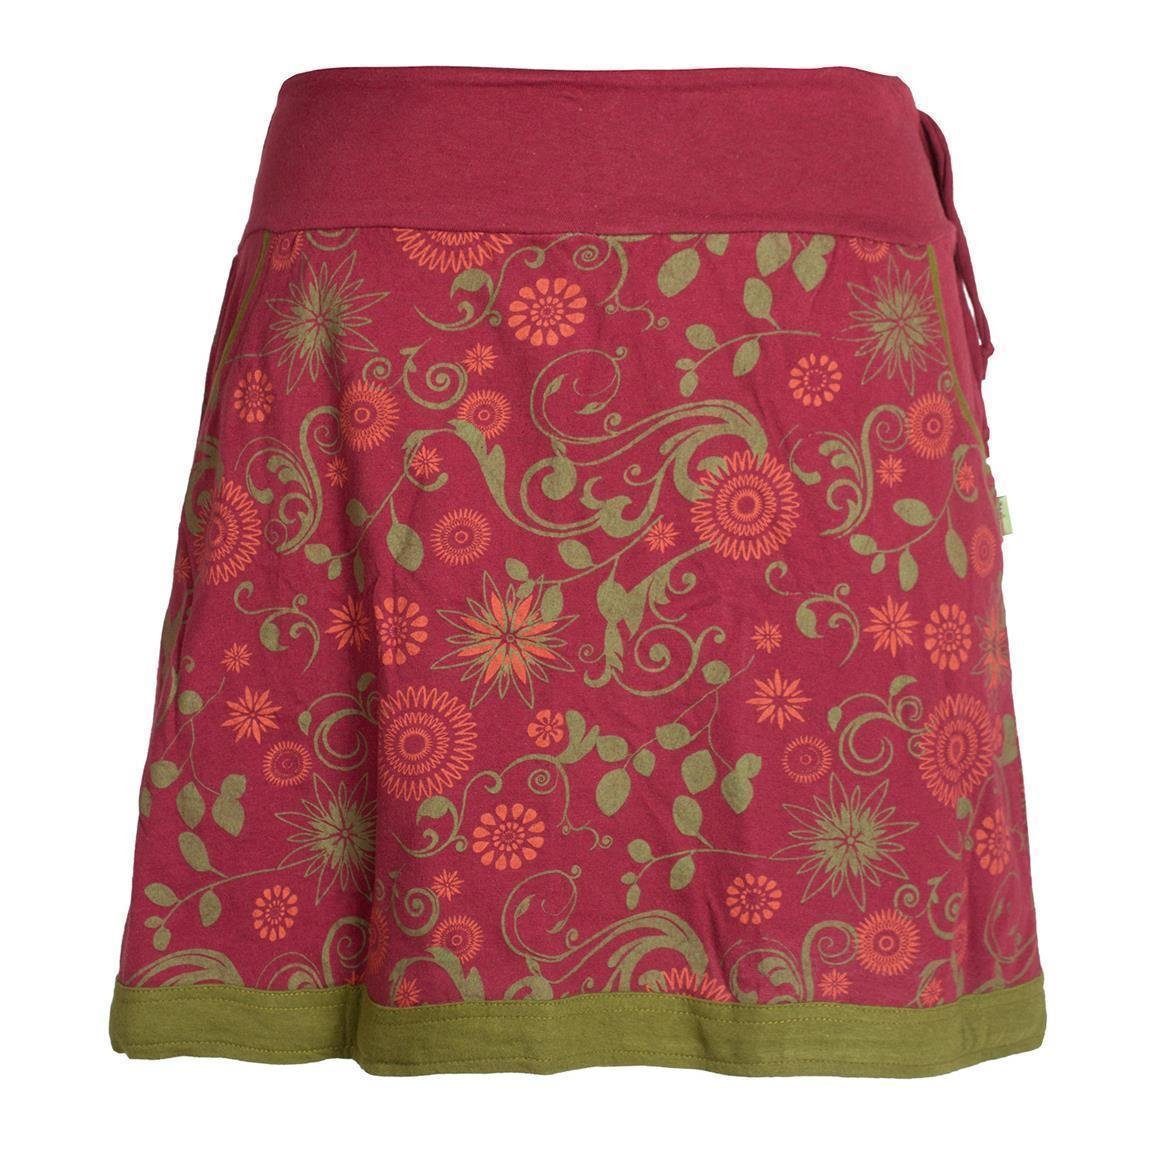 Rote Röcke für Damen online kaufen | OTTO